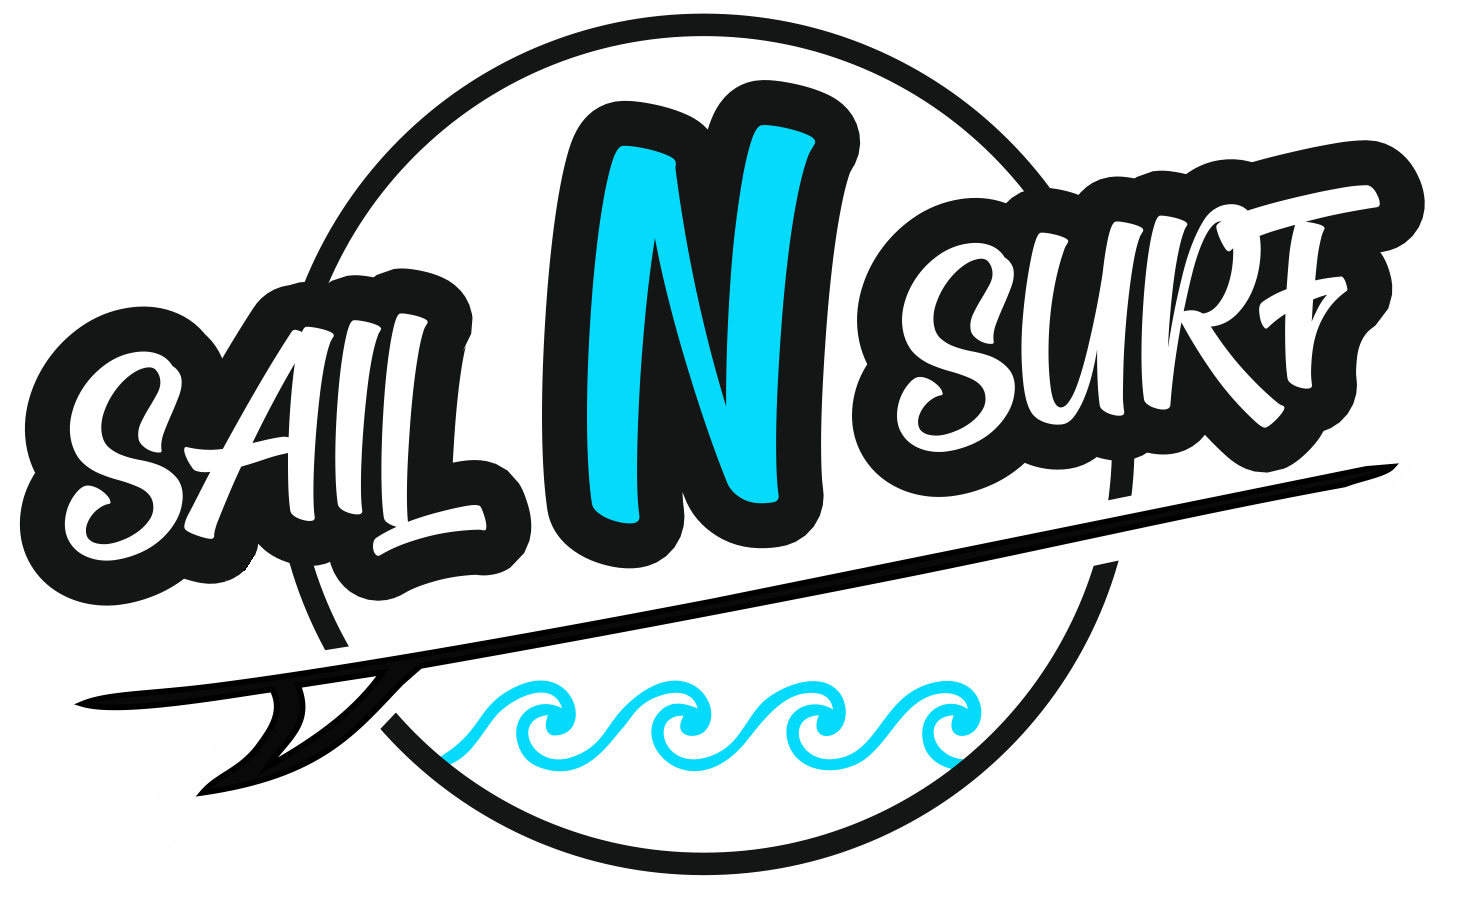 Sail 'n' Surf shop